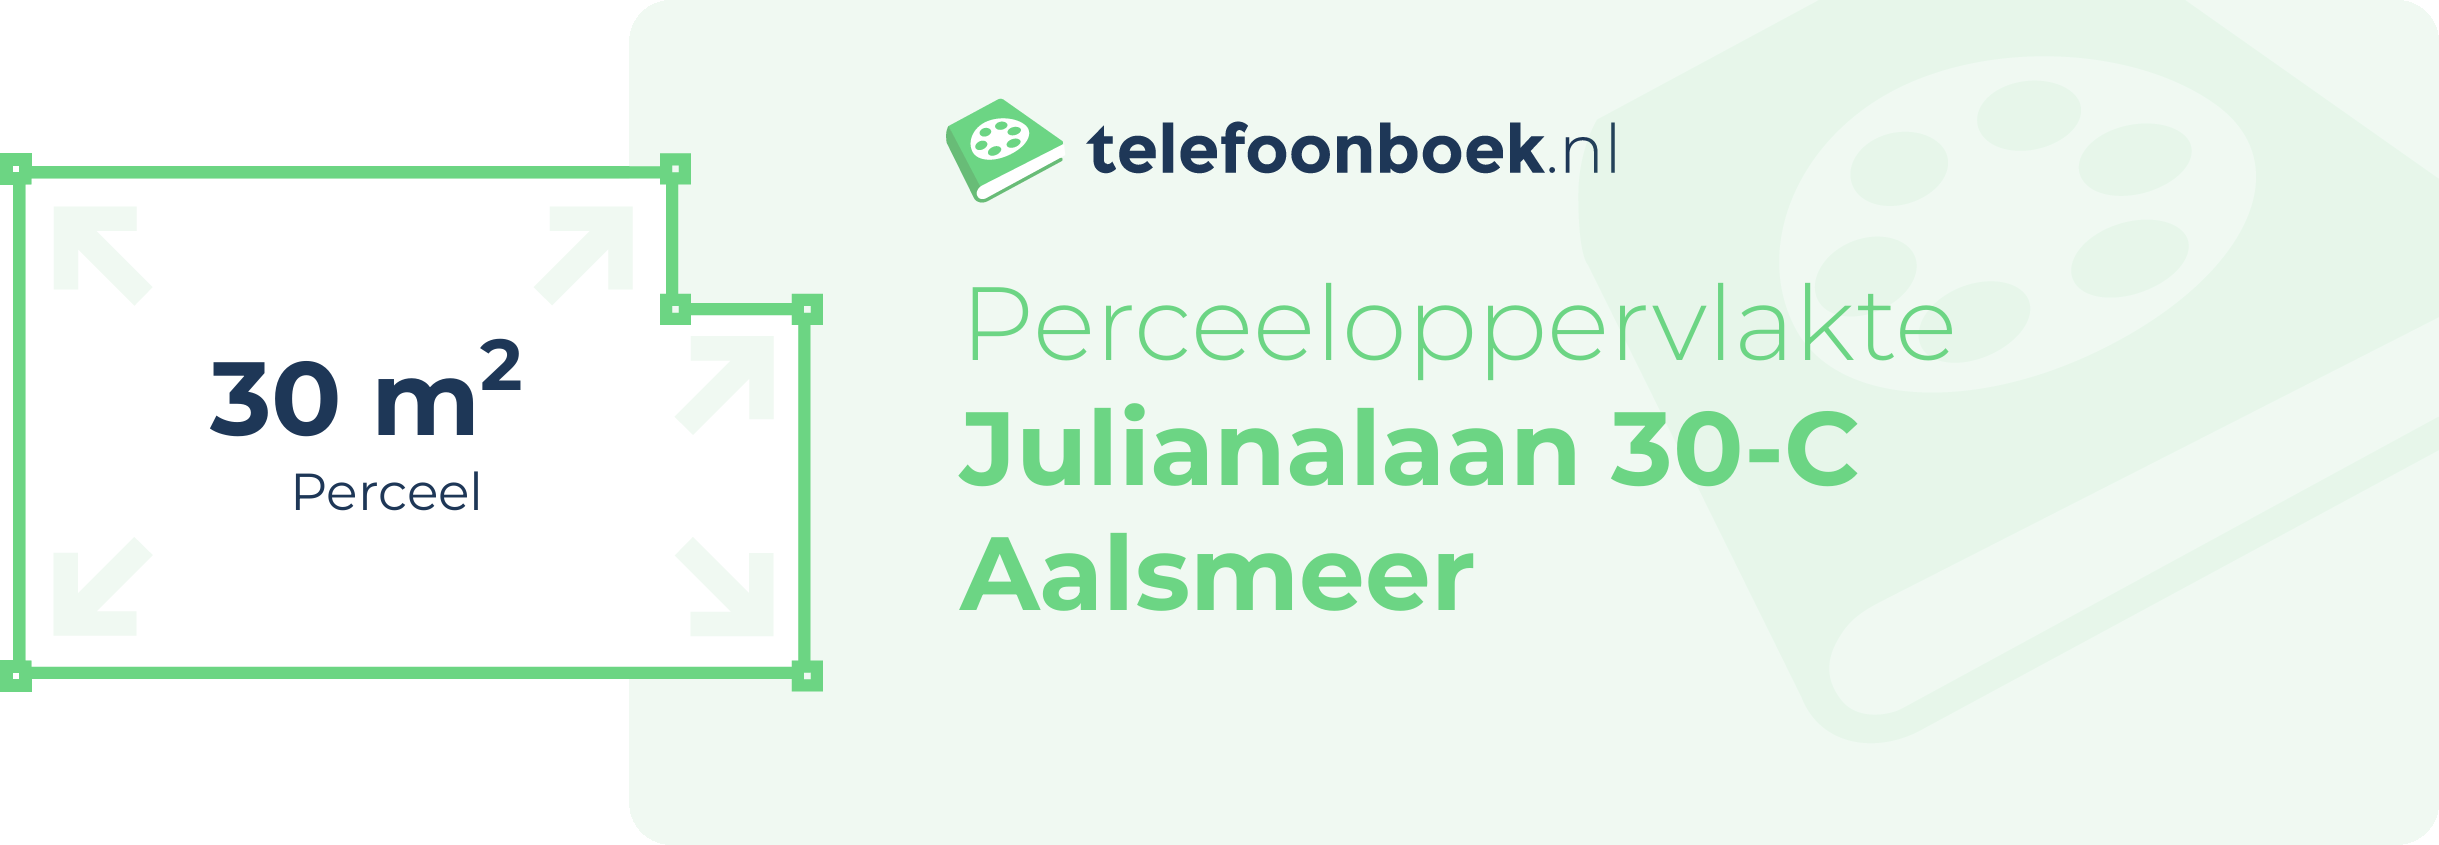 Perceeloppervlakte Julianalaan 30-C Aalsmeer